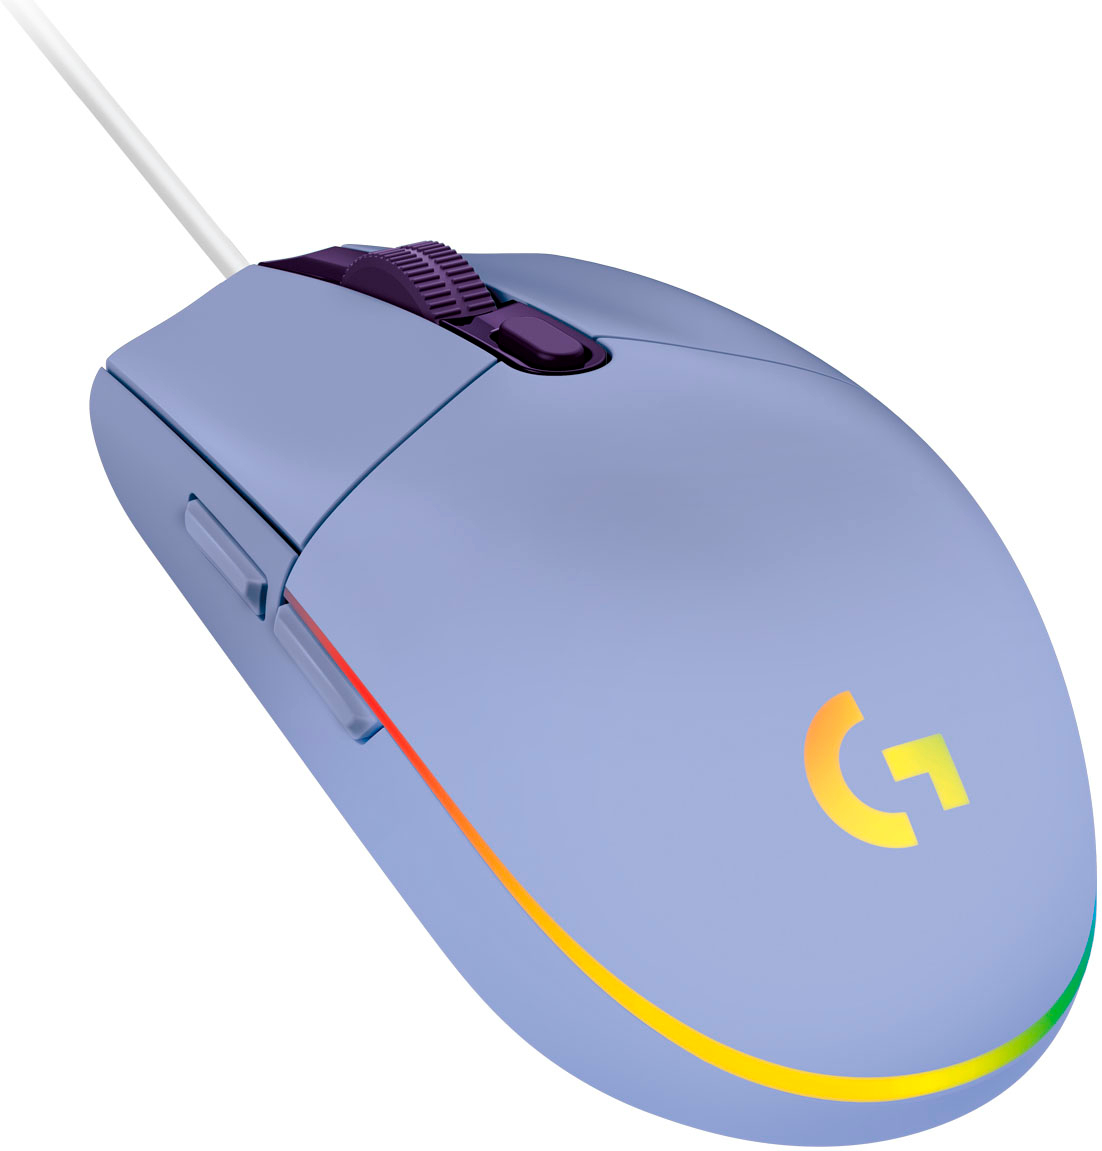 Mouse gamer Logitech G Series Lightsync G203 – Azul - TECNOMARKET.INK